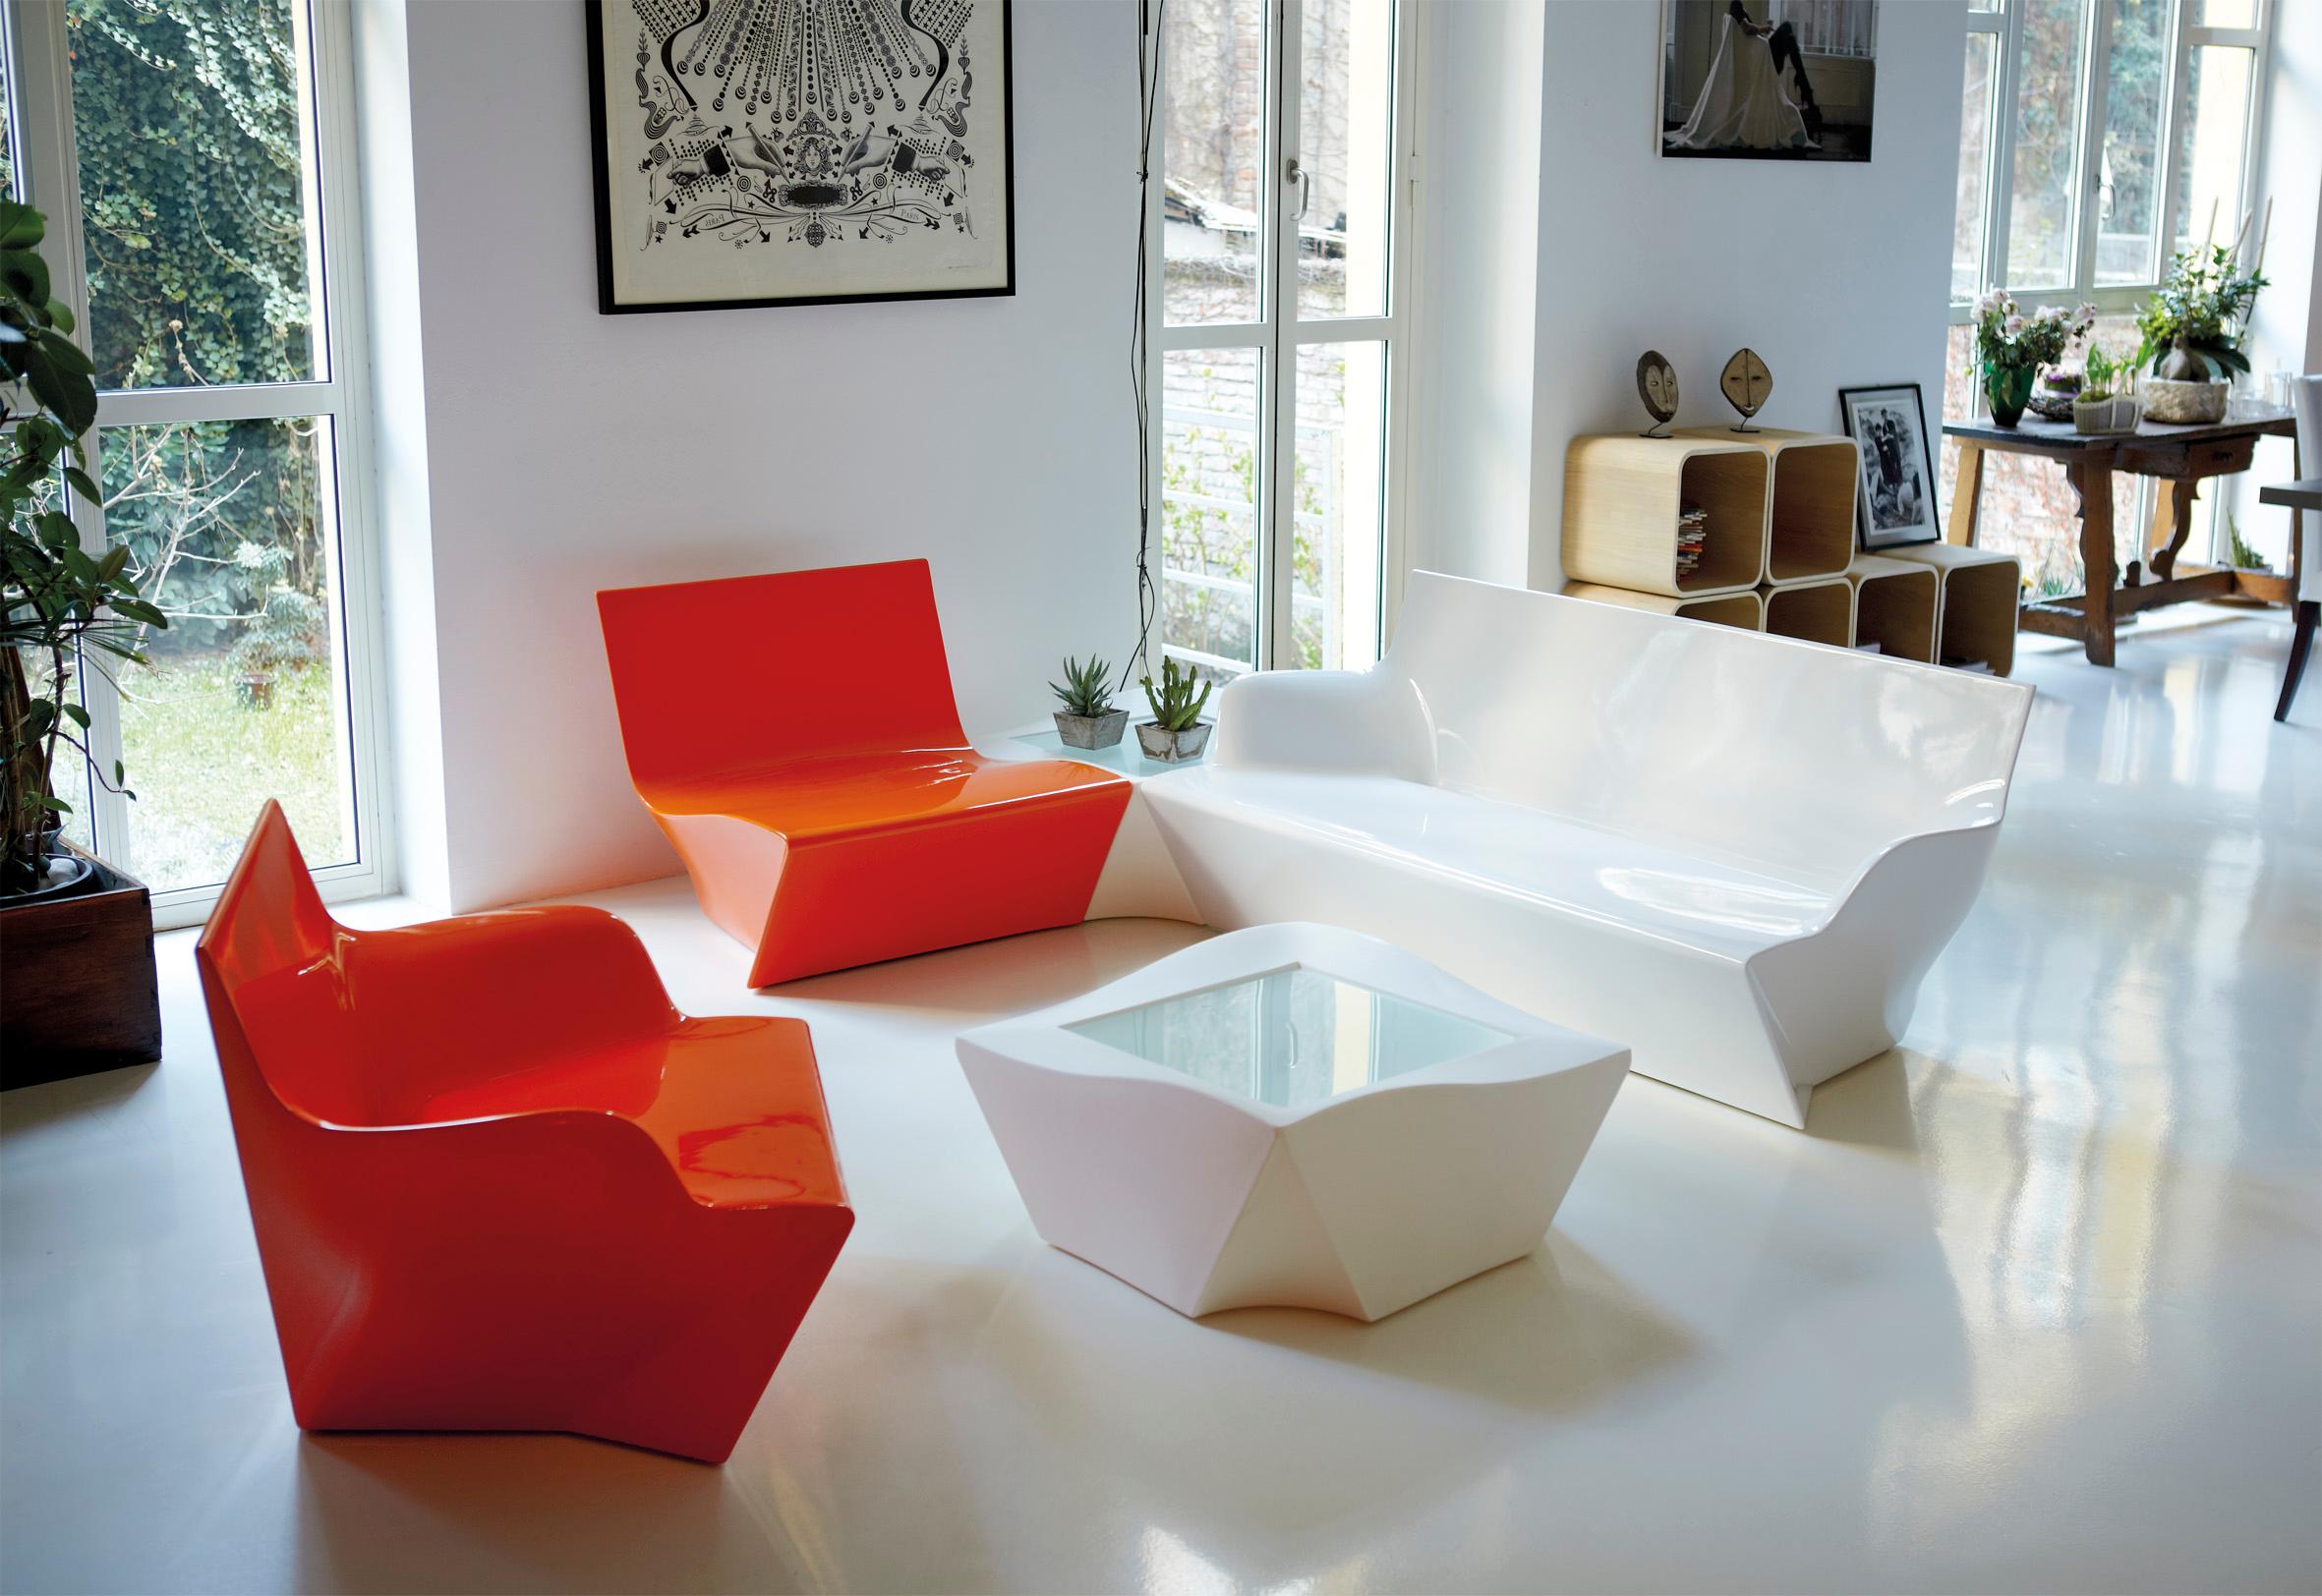 Pumpkin Orange Kami Ichi Niedriger Stuhl von Marc Sadler
Abmessungen: T 75 x B 80 x H 70 cm. Sitzhöhe: 35 cm.
MATERIALEN: Polyethylen.
Gewicht: 15 kg.

Erhältlich in verschiedenen Farbvarianten. Dieses Produkt ist für die Verwendung im Innen- und